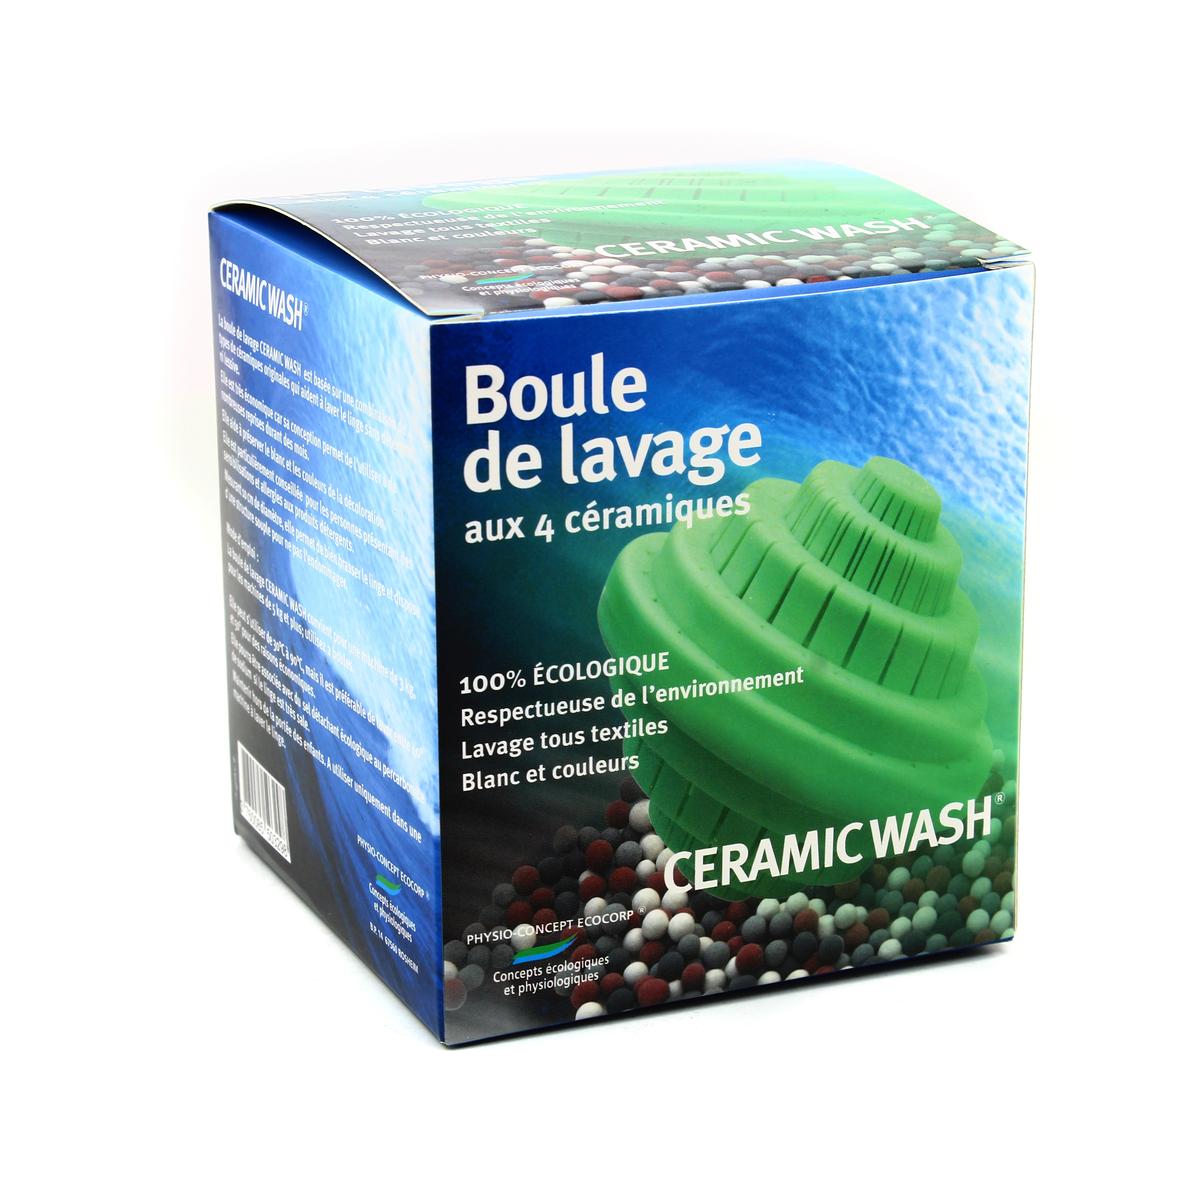 Achat Ceramic Wash Boule de lavage aux 4 céramiques écologique, 1